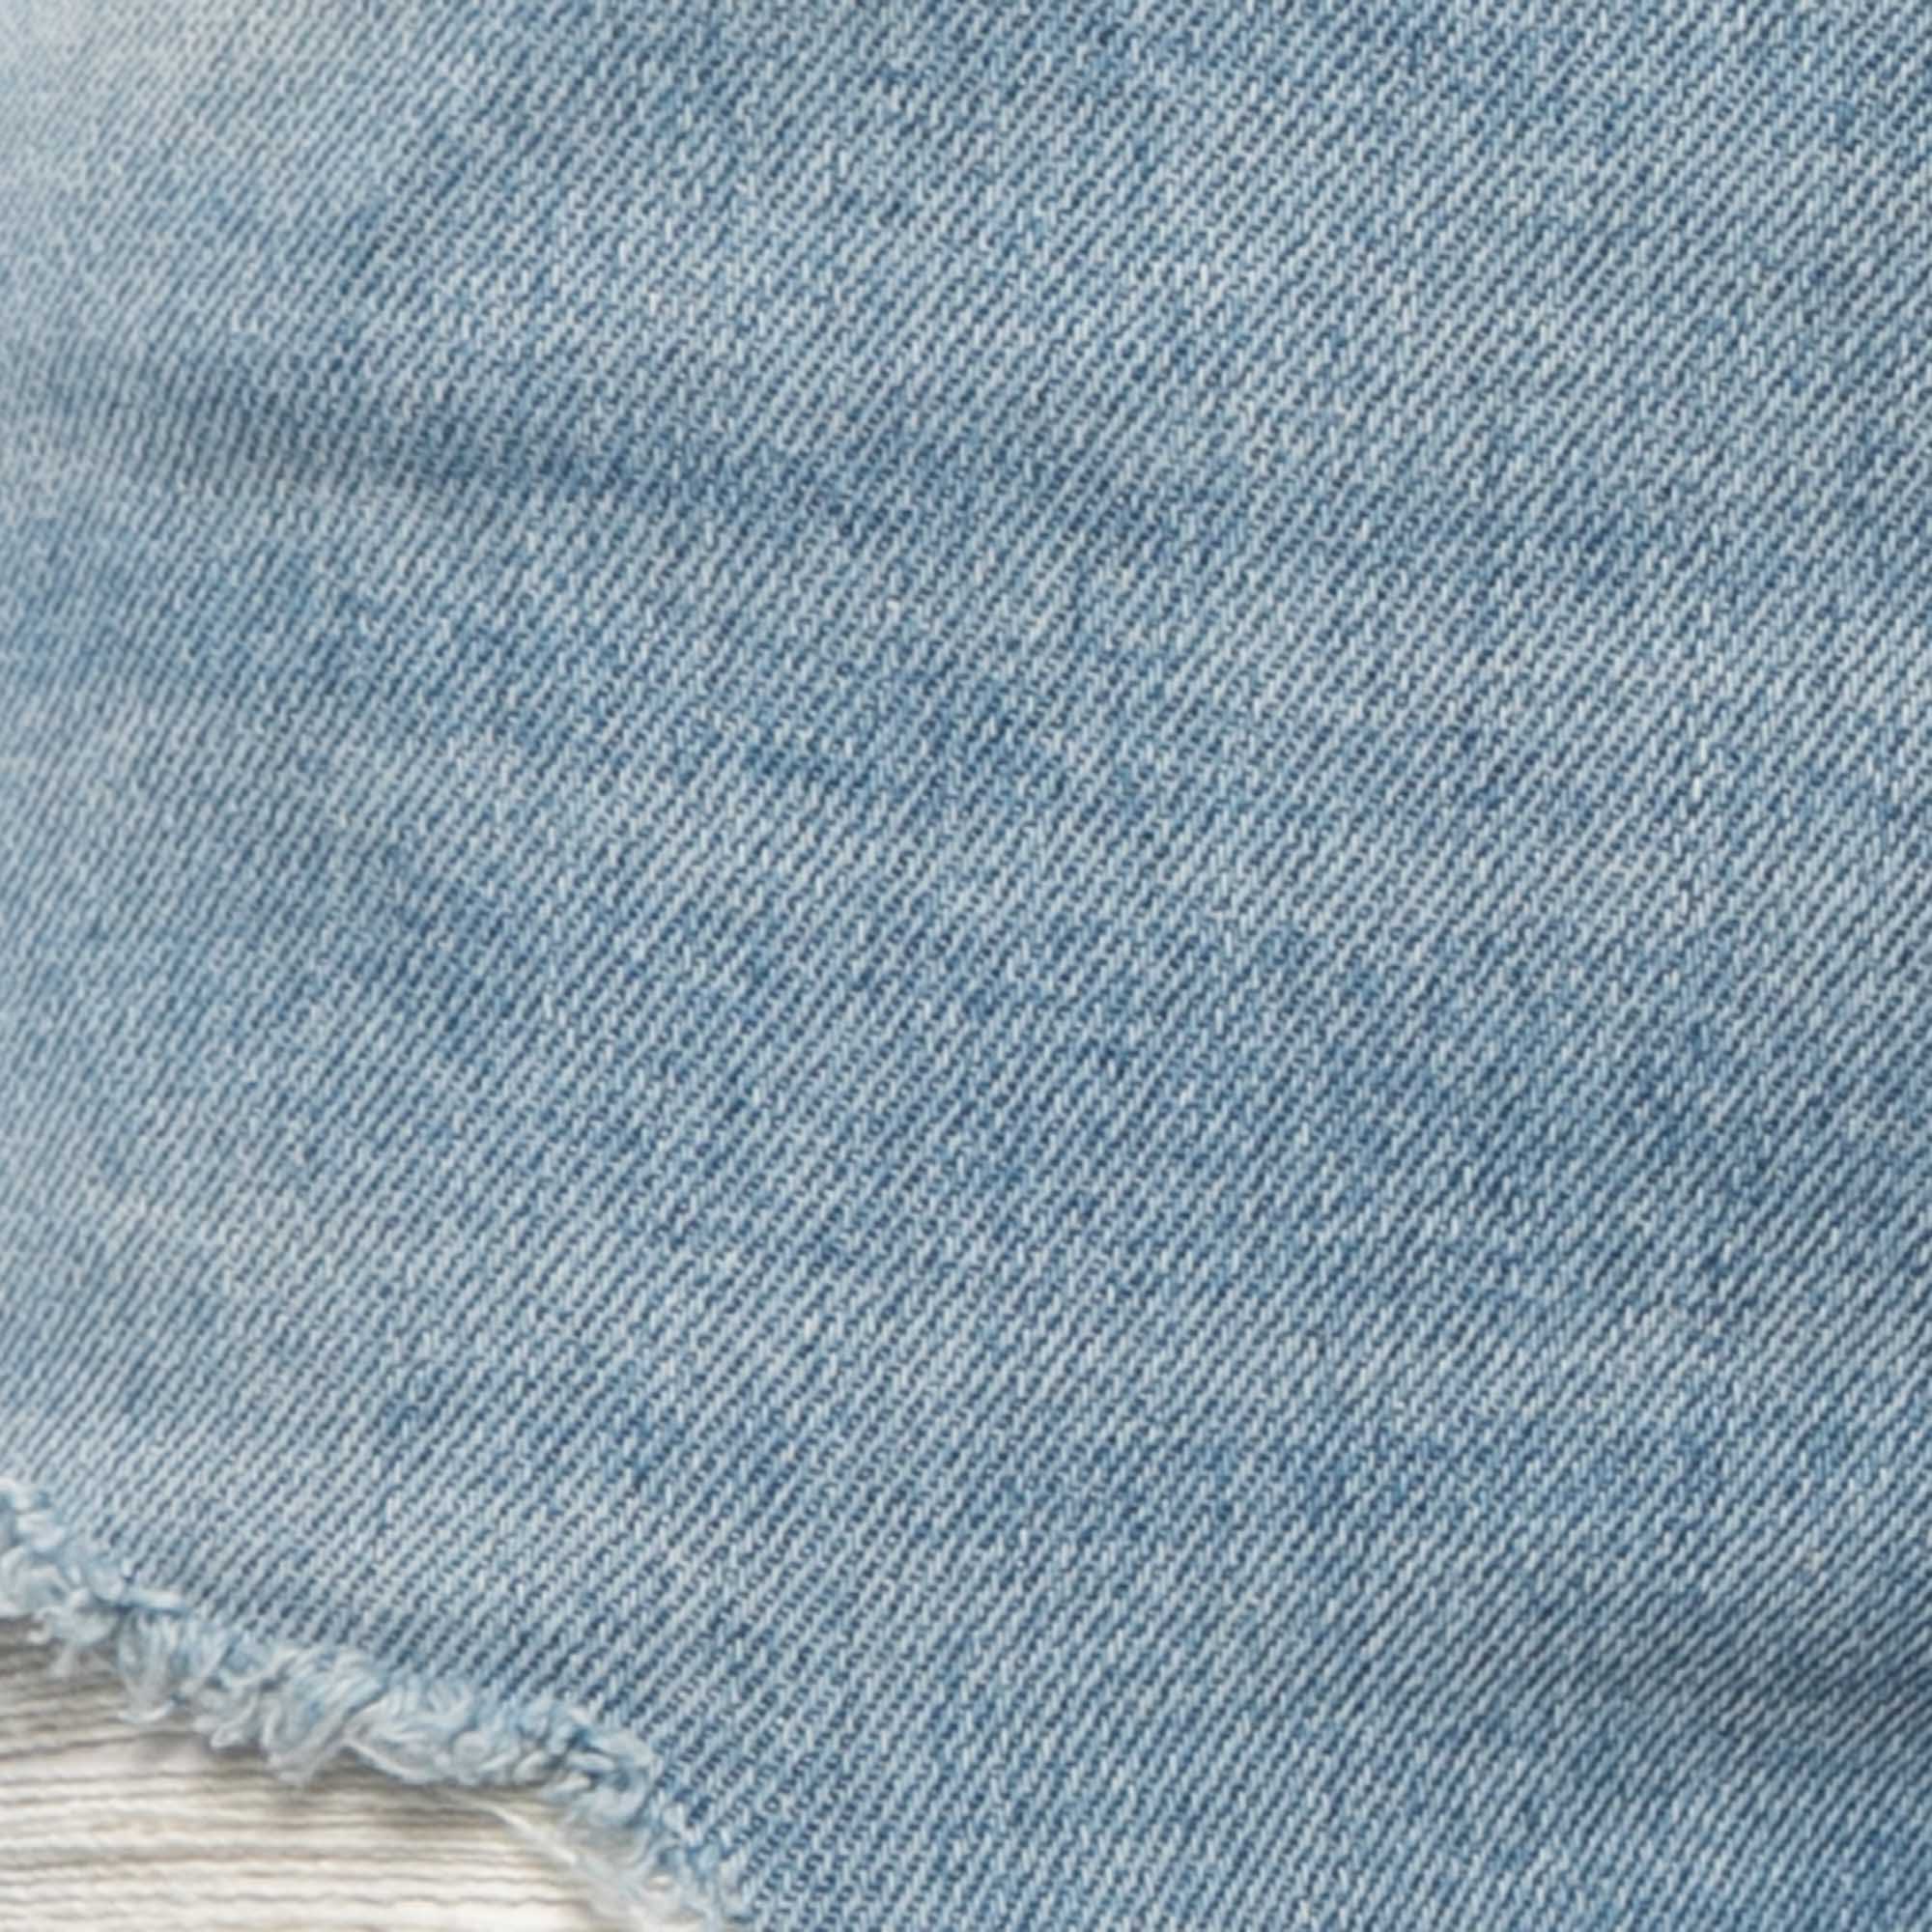 Just Cavalli Blue Distressed Denim Slim Fit Jeans M Waist 29